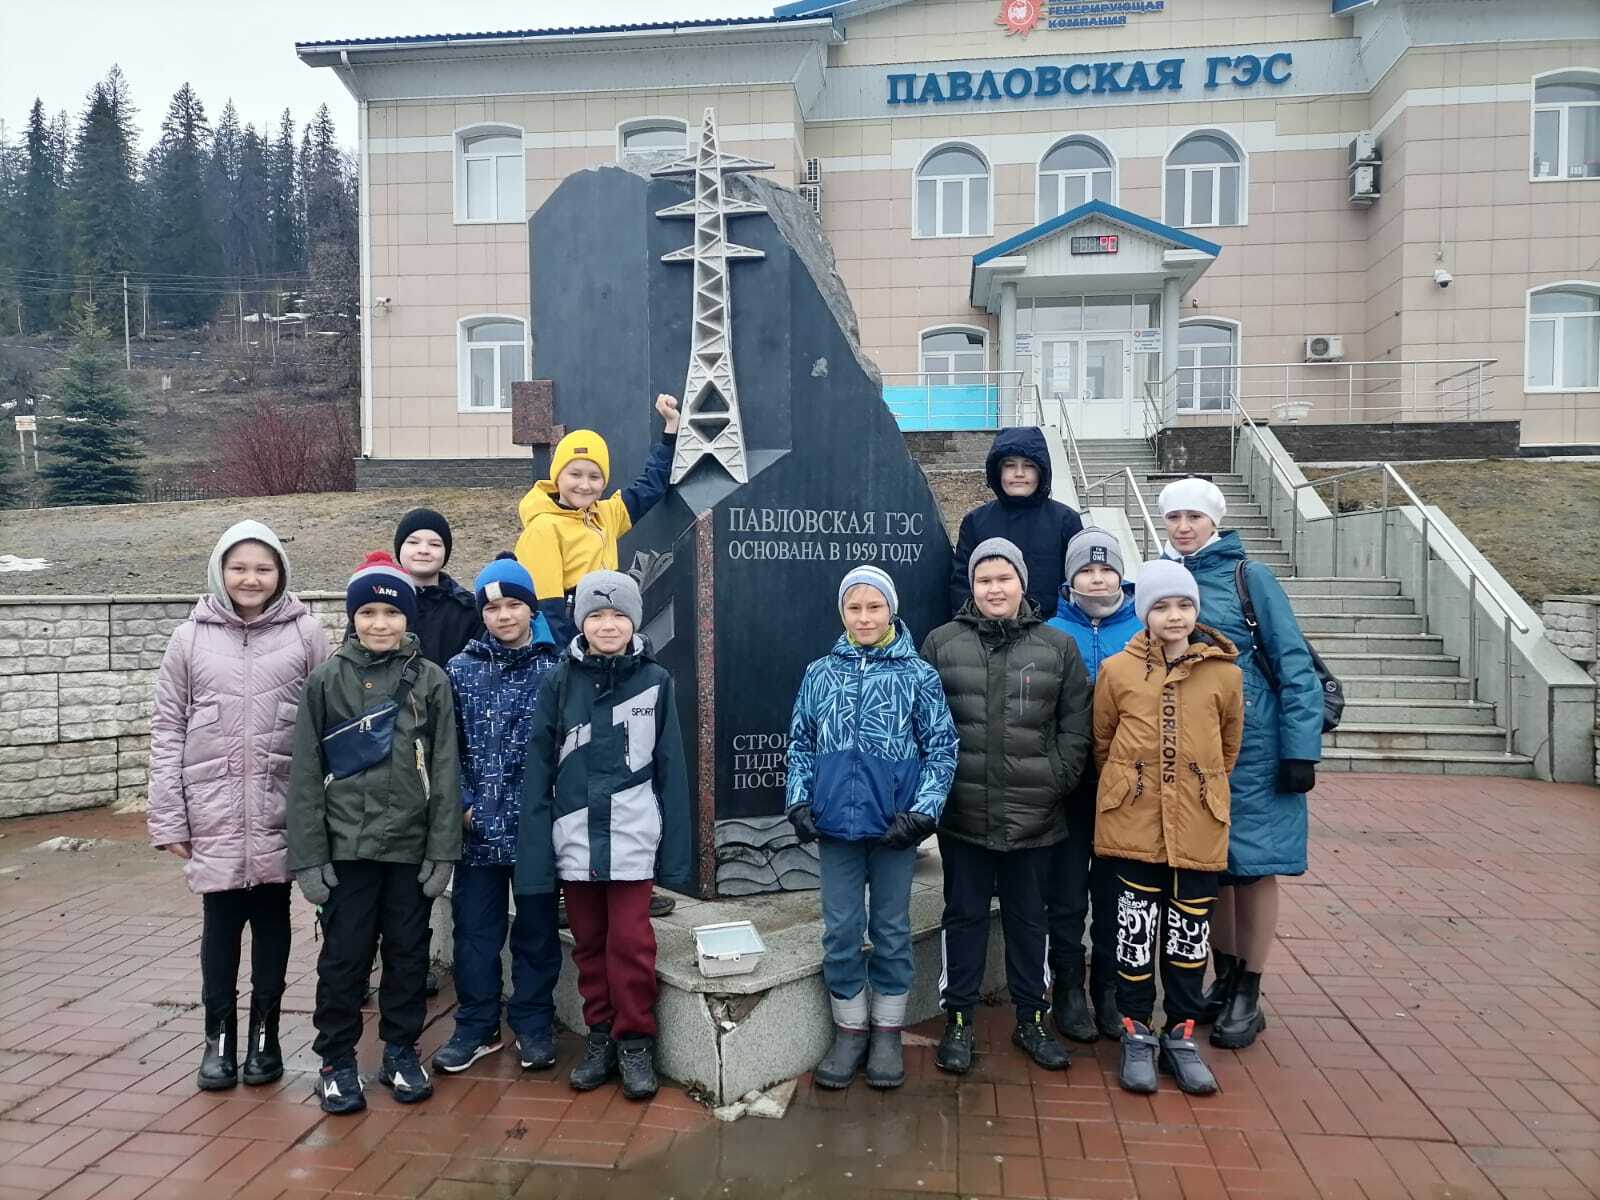 Экскурсия на Павловскую ГЭС